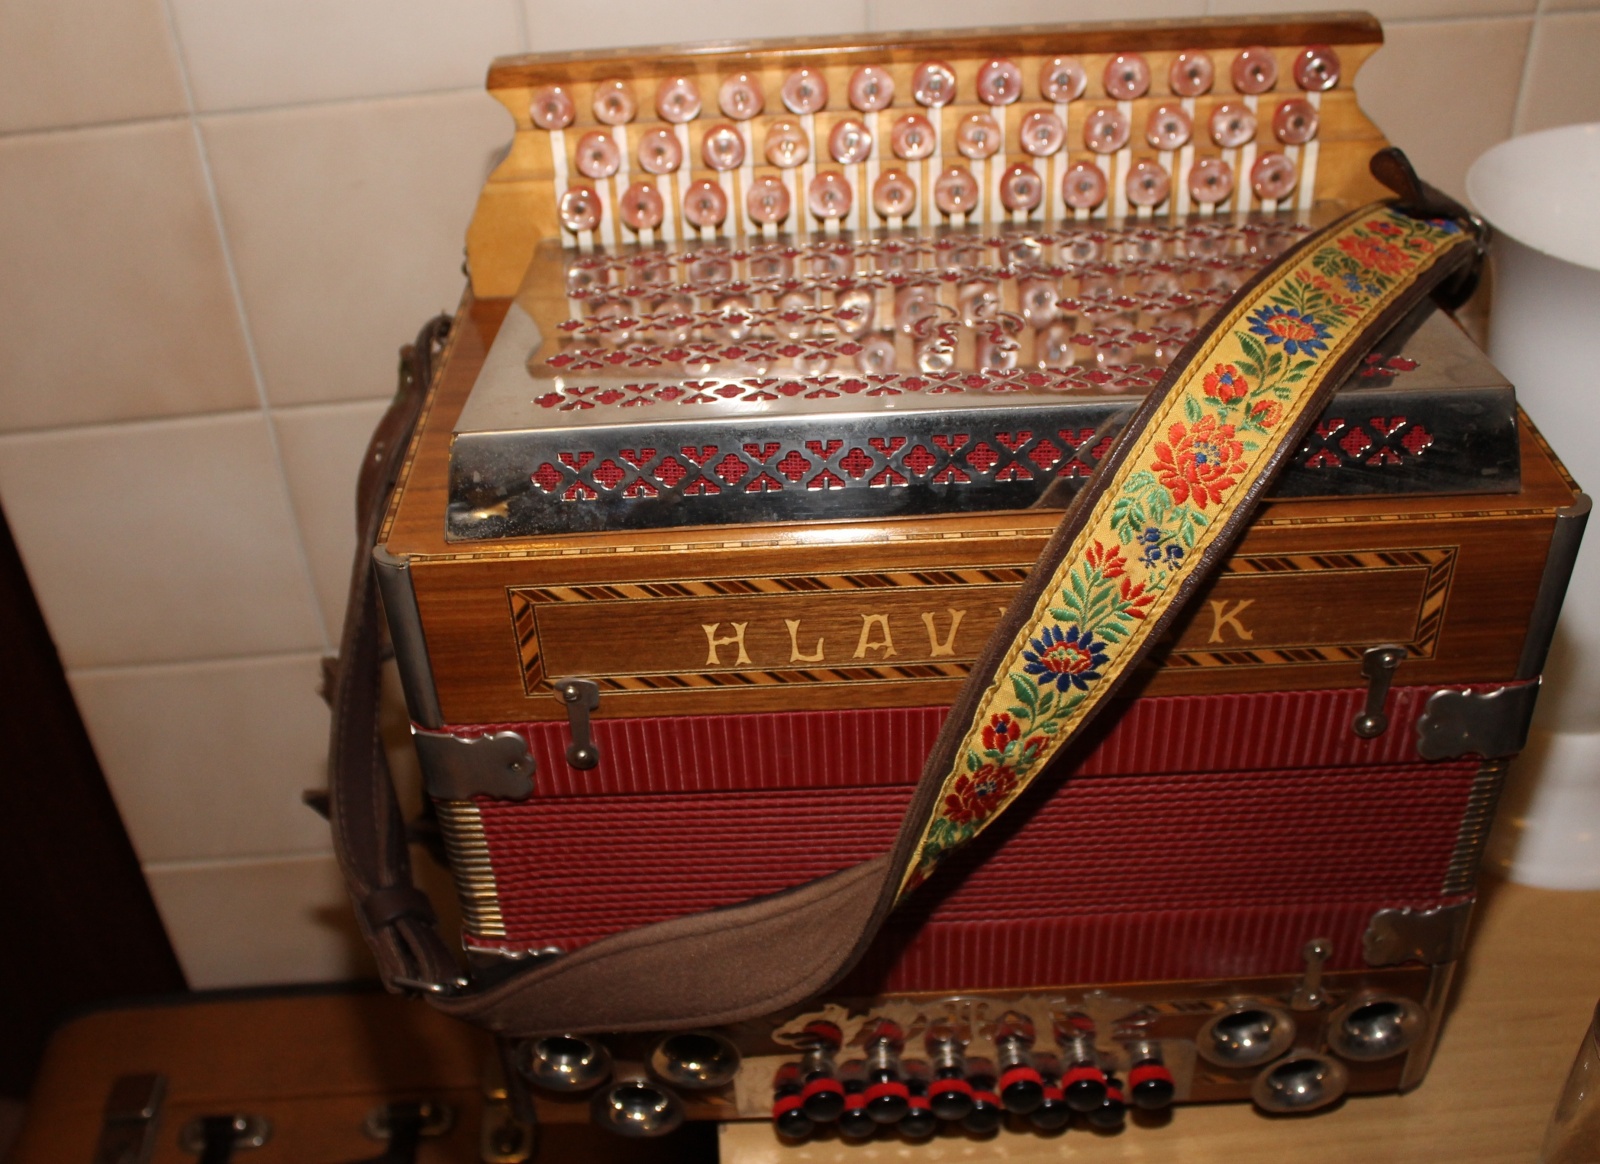 Ve sbírce mám třináct harmonik, říká pohořelický muzikant Janičata -  Břeclavský deník